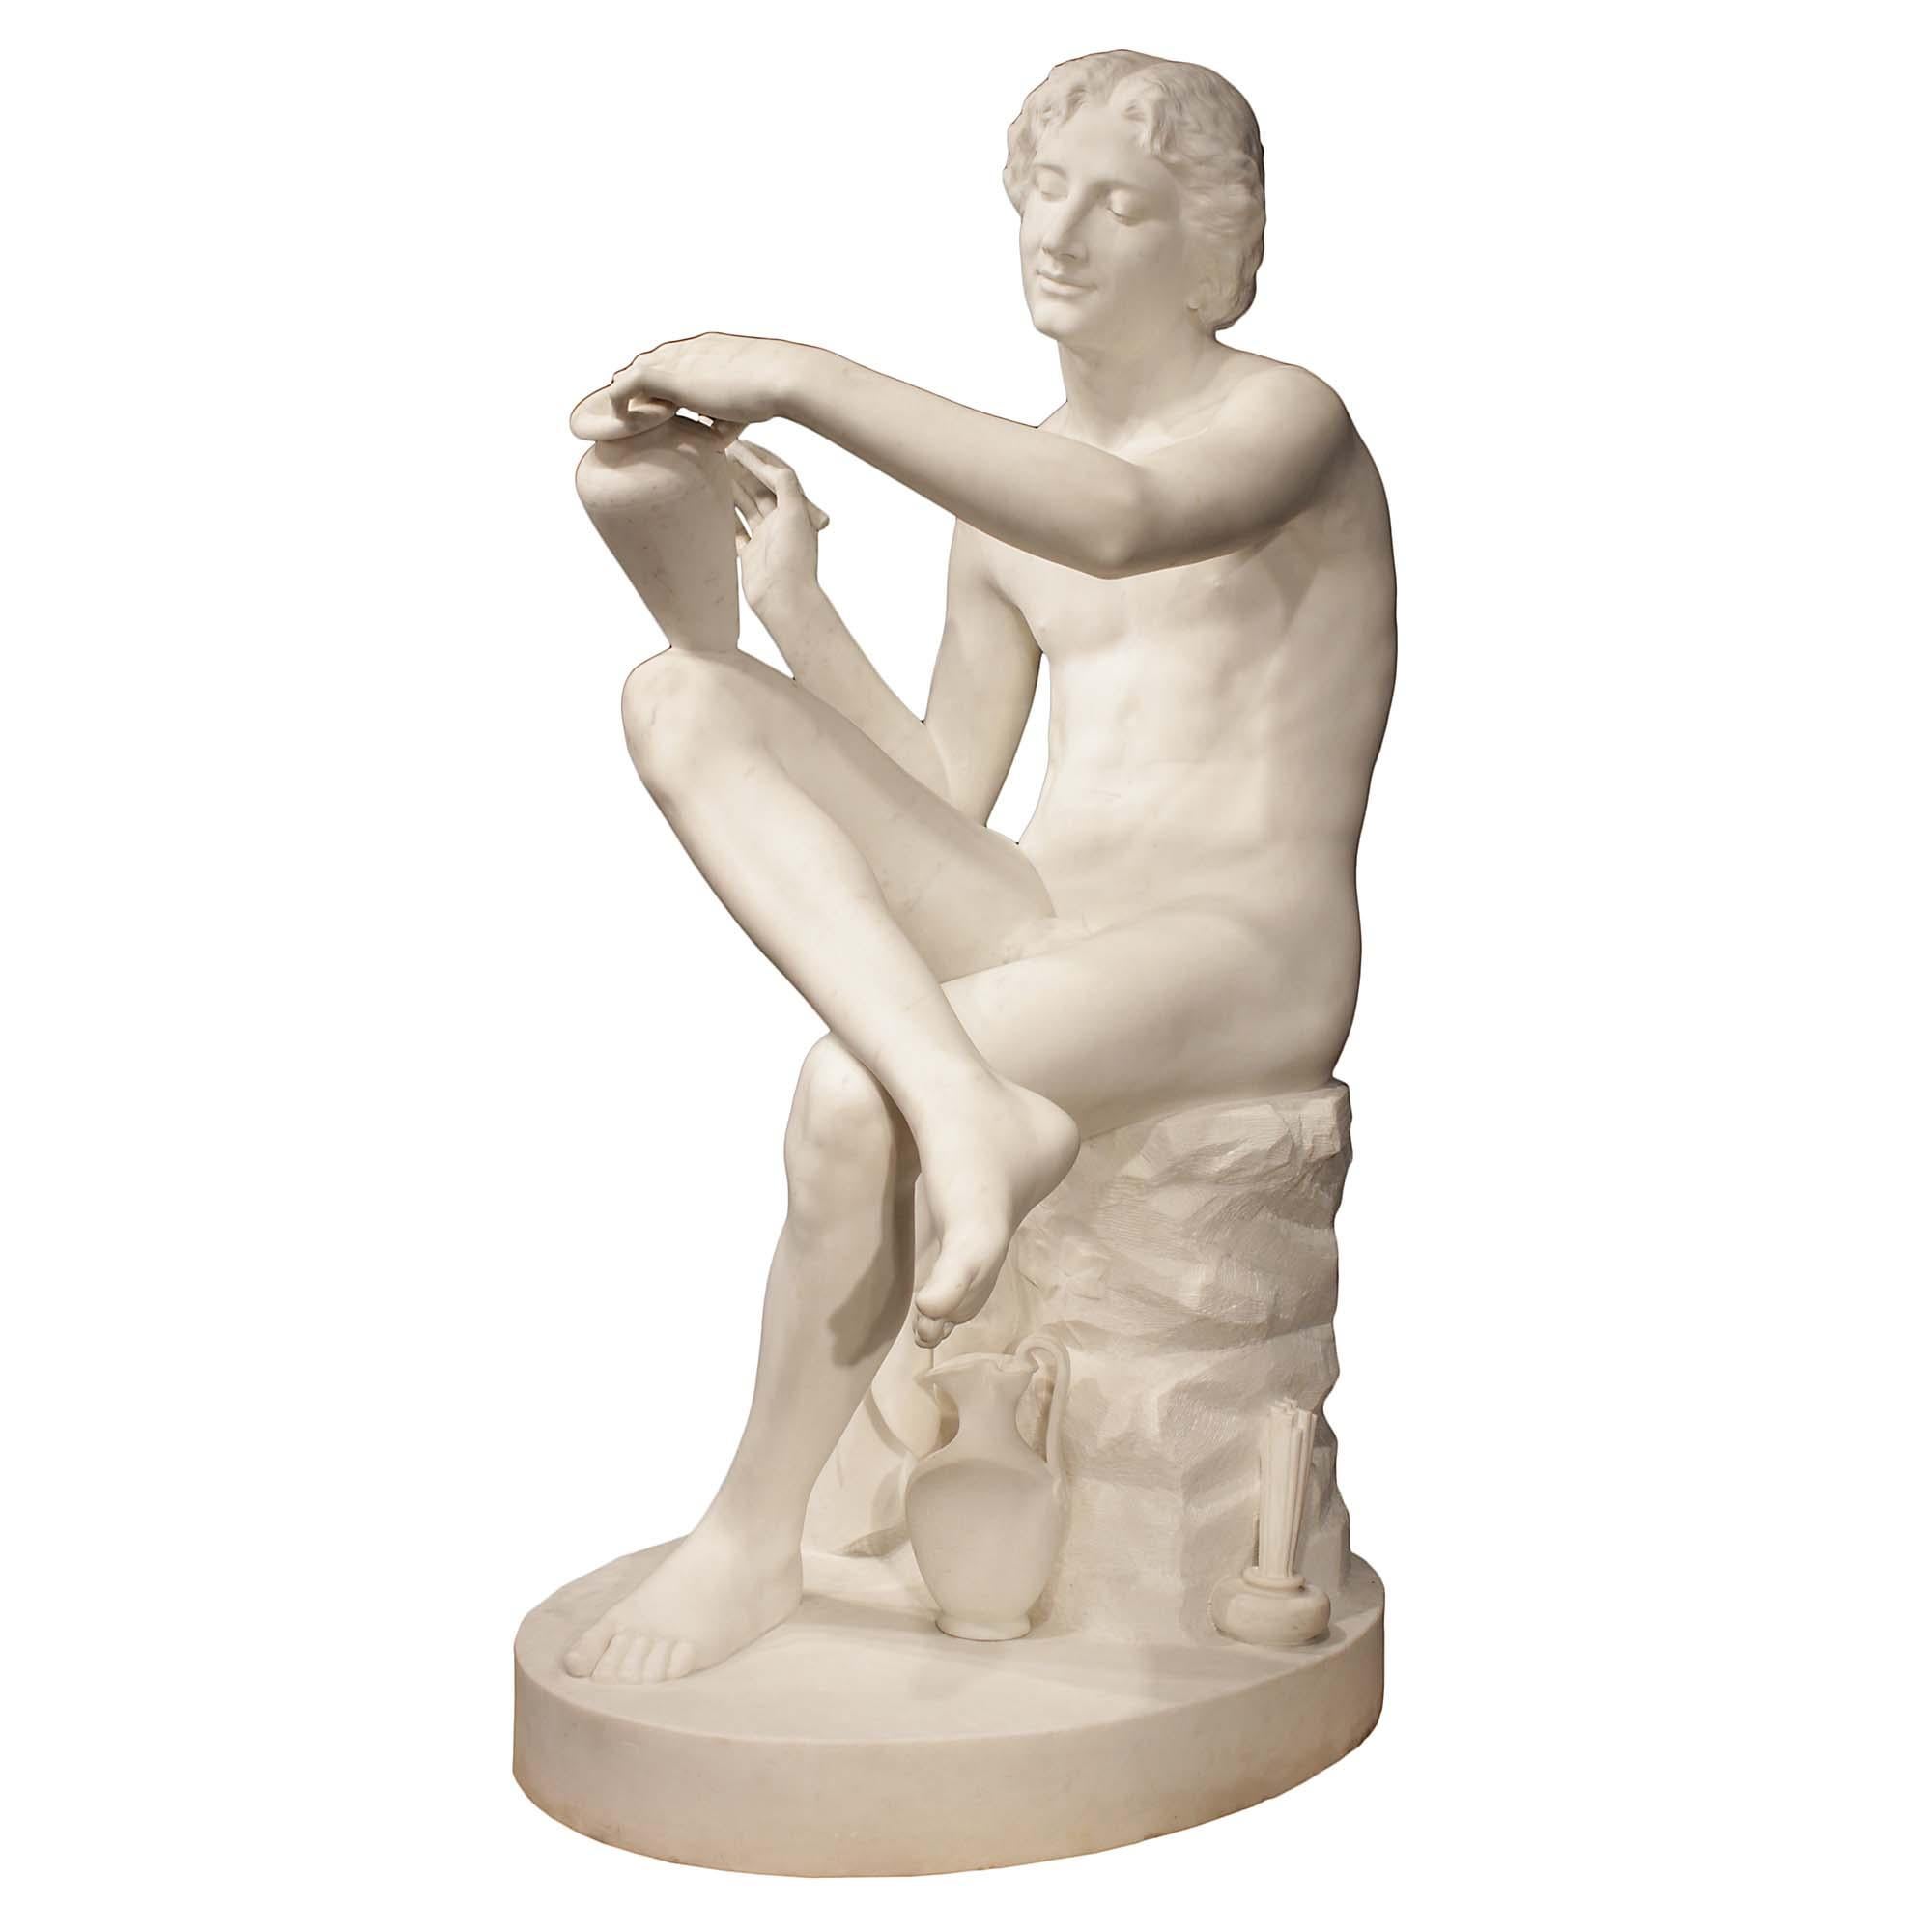 Eine sehr beeindruckende italienische Skulptur aus massivem weißem Carrara-Marmor des 19. Jahrhunderts, signiert S. Schroeder 1875. Die Statue steht auf einem runden Sockel, der einen drapierten Künstler zeigt, der mit gekreuzten Beinen sitzt und